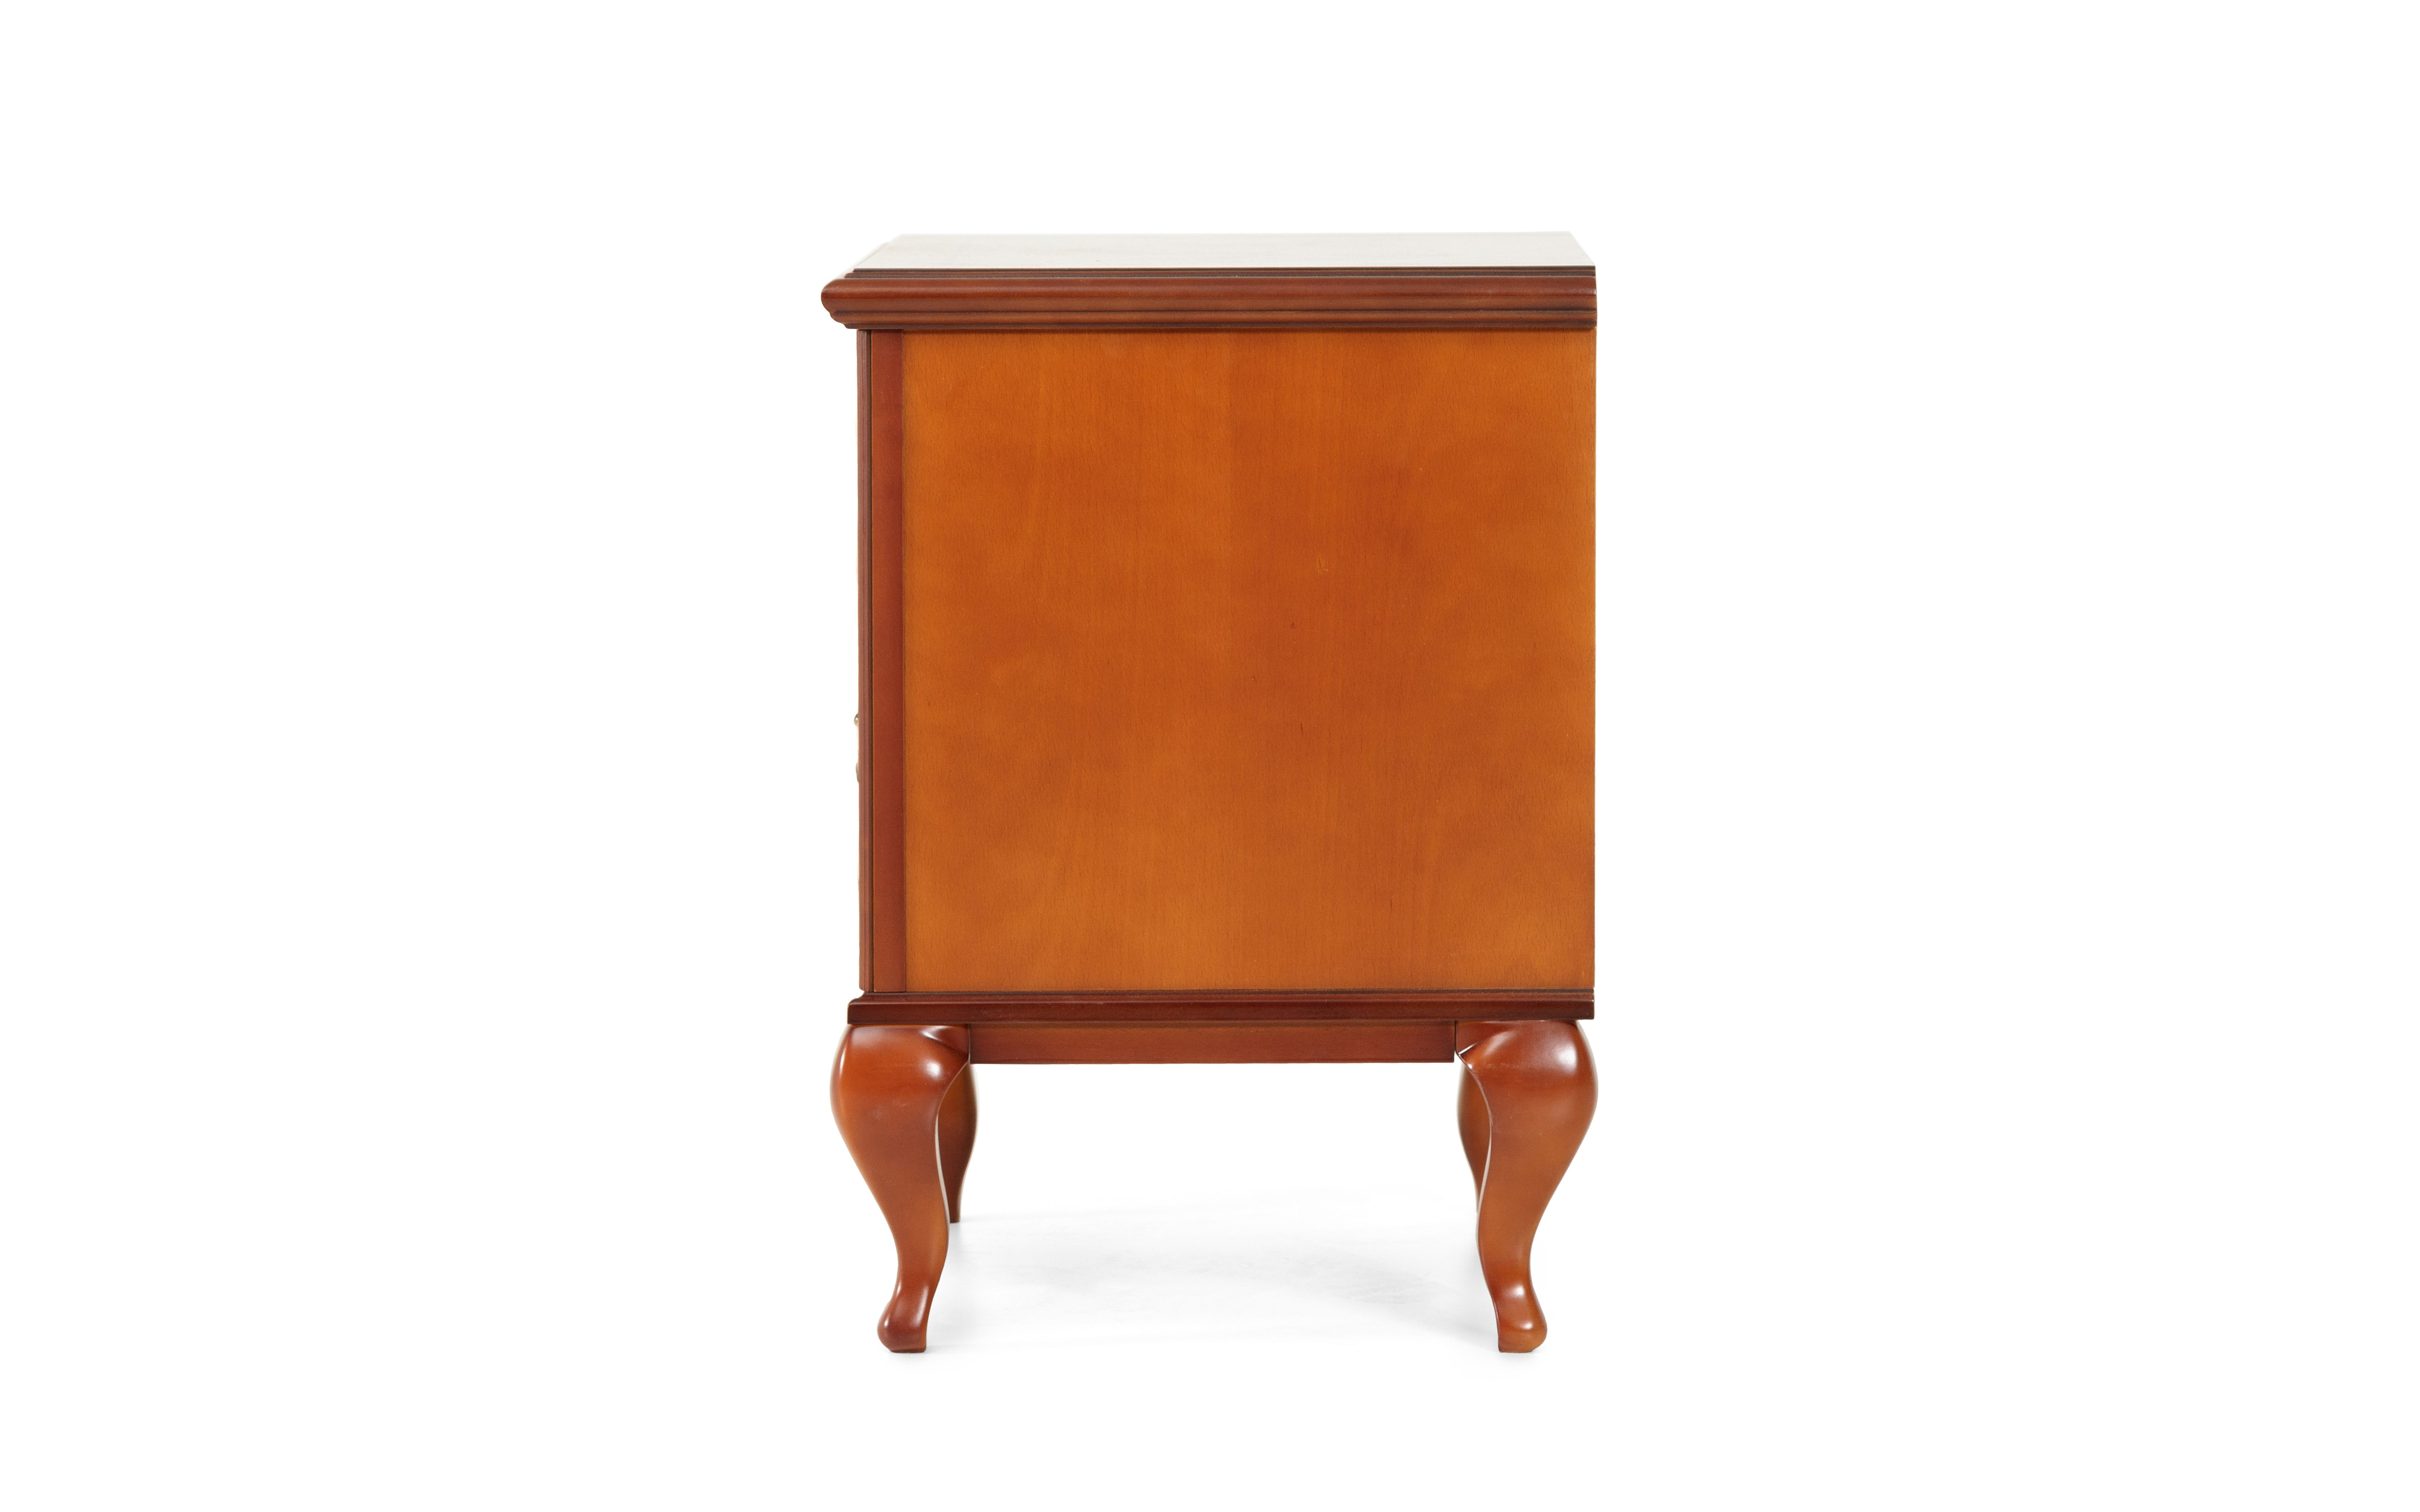 Тумбочка прикроватная Timber Неаполь, 57x42x59 см цвет: янтарь (T-521)T-521